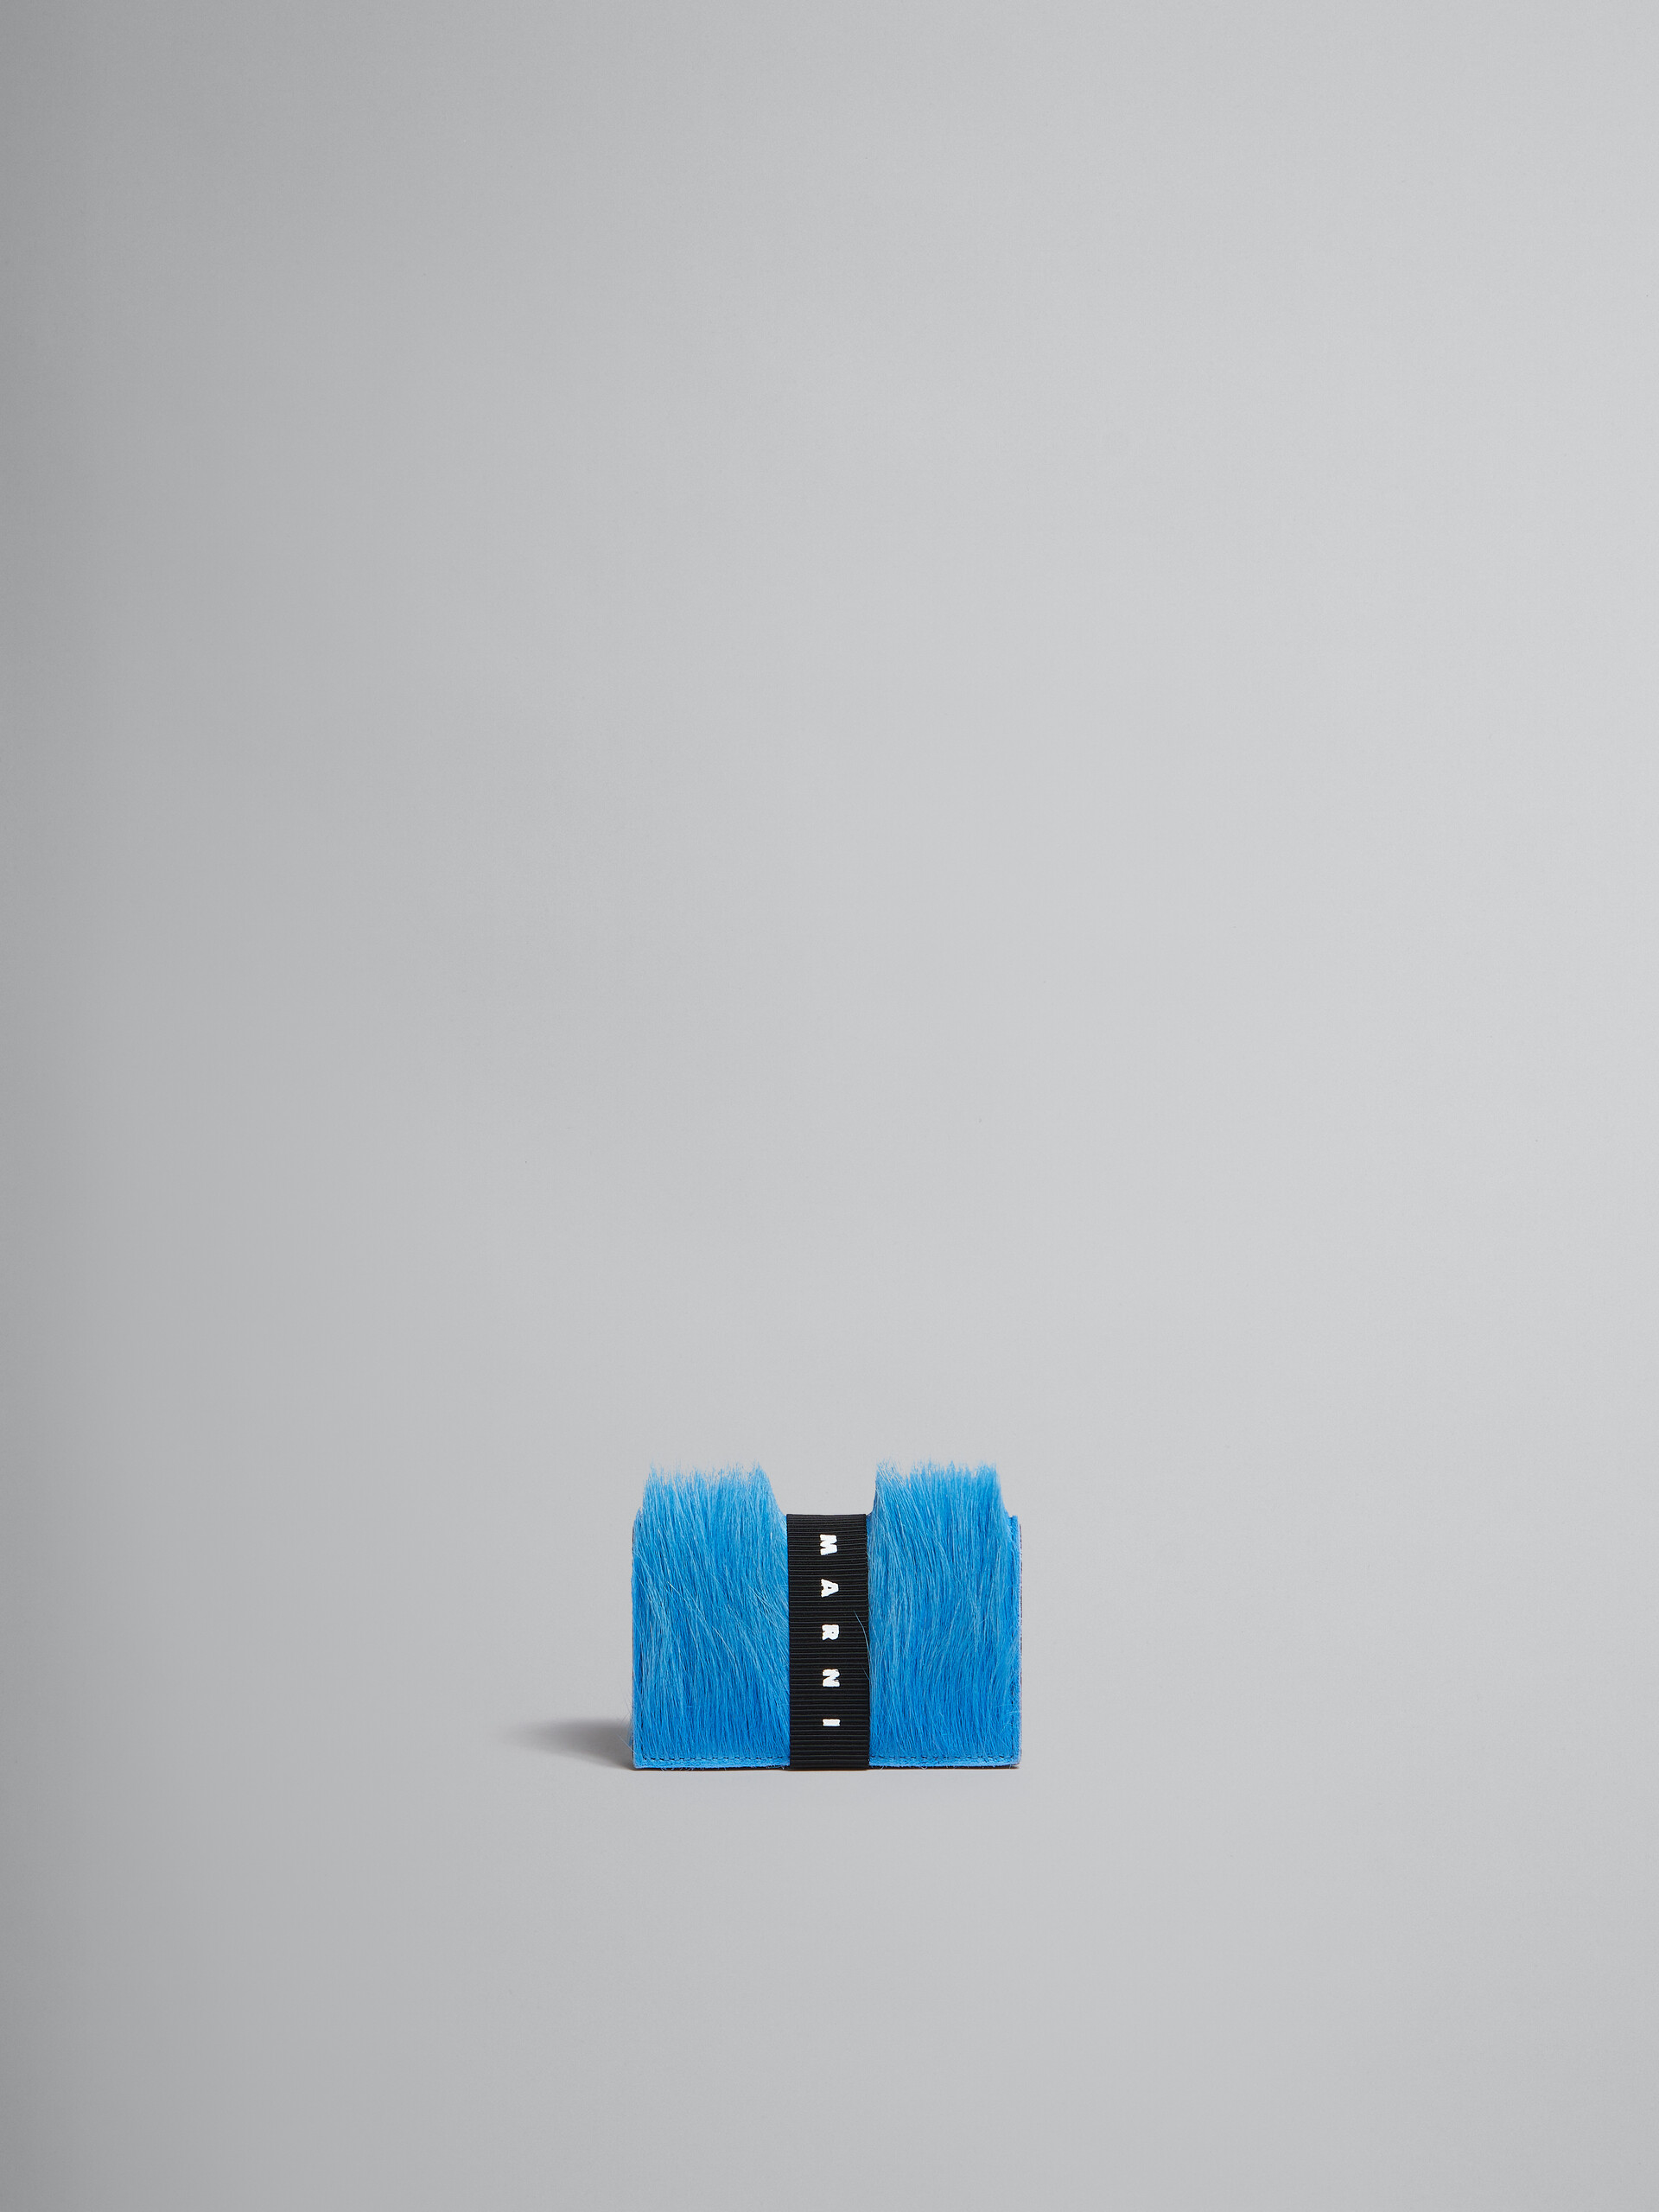 Portafoglio tri-fold in vitello a pelo lungo blu con cinturino logato - Portafogli - Image 1